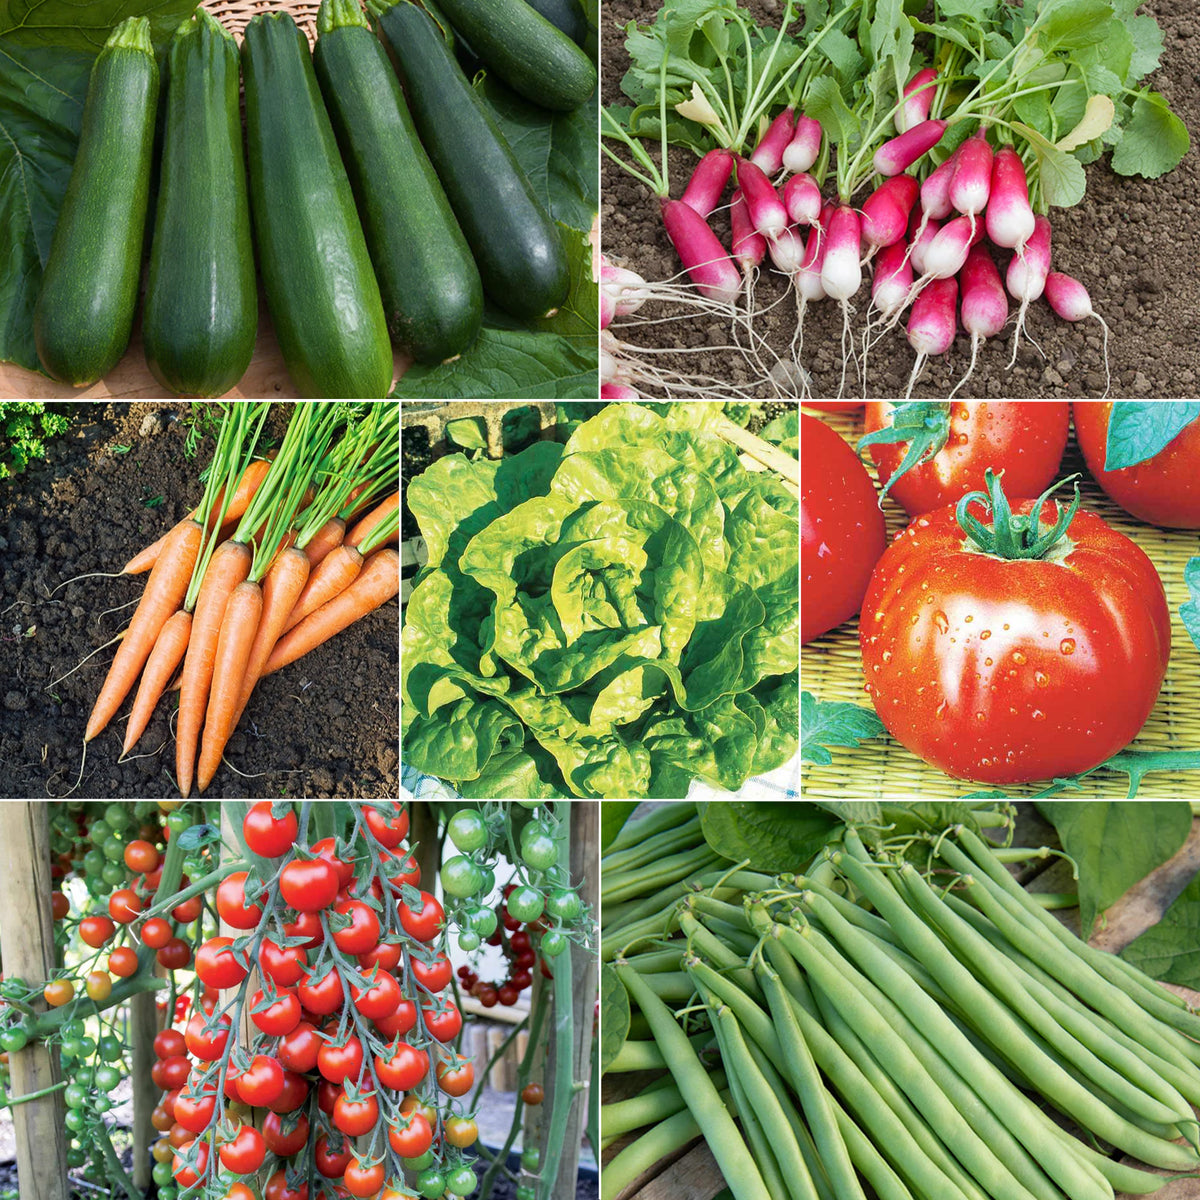 Catalogue Graines et plantes tropicales - Boutique Végétale